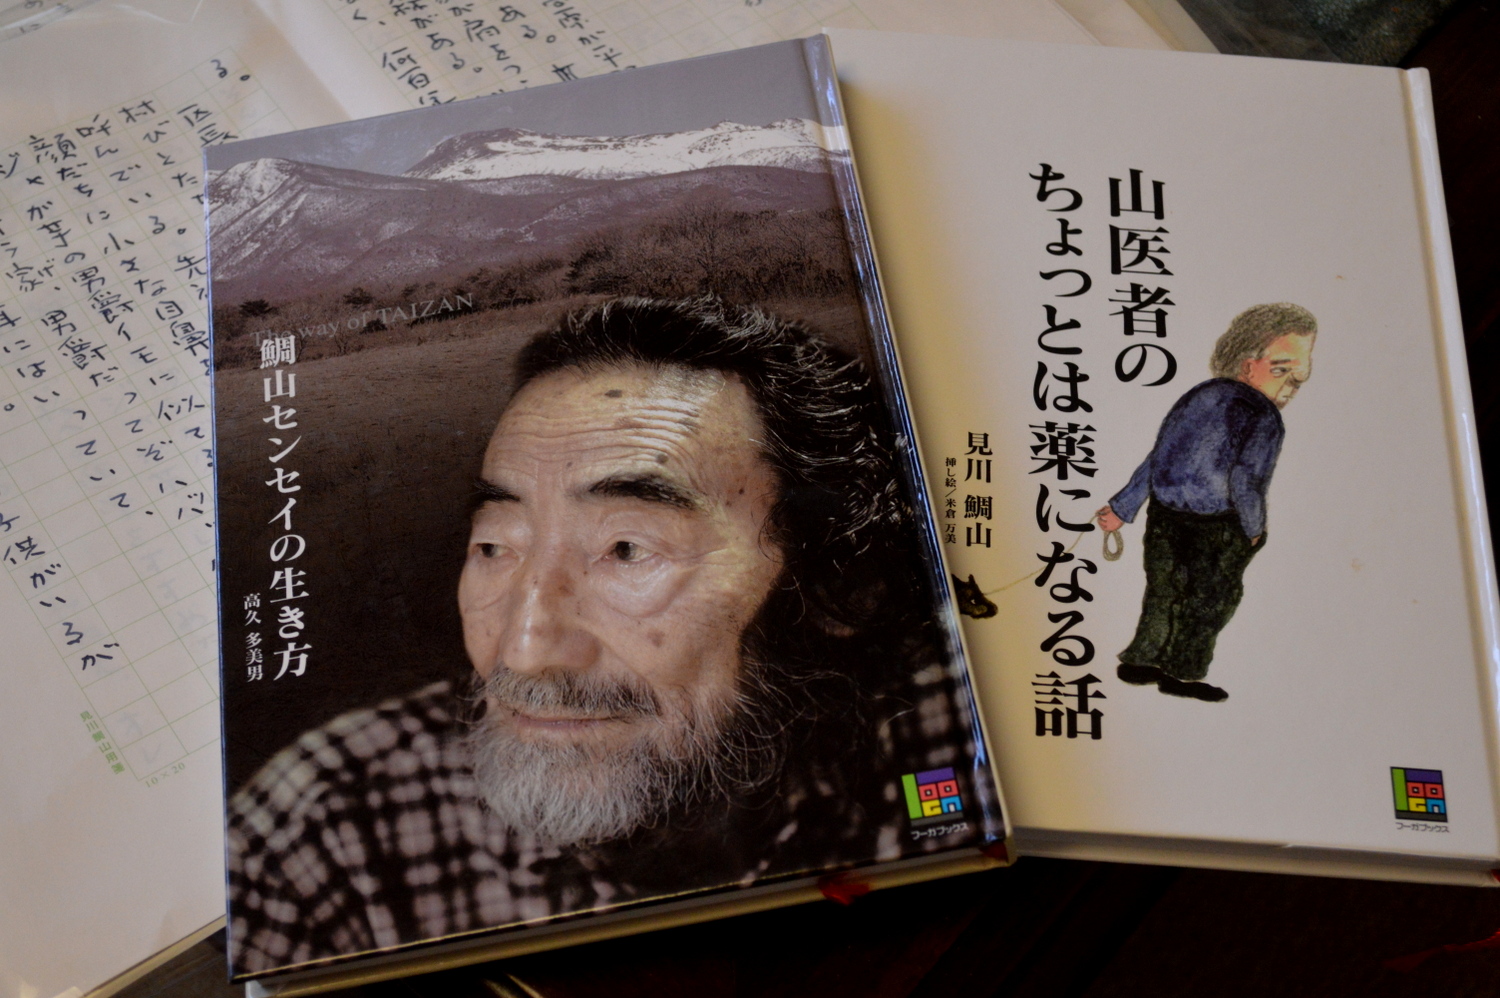 那須・見川鯛山先生の最後の著書